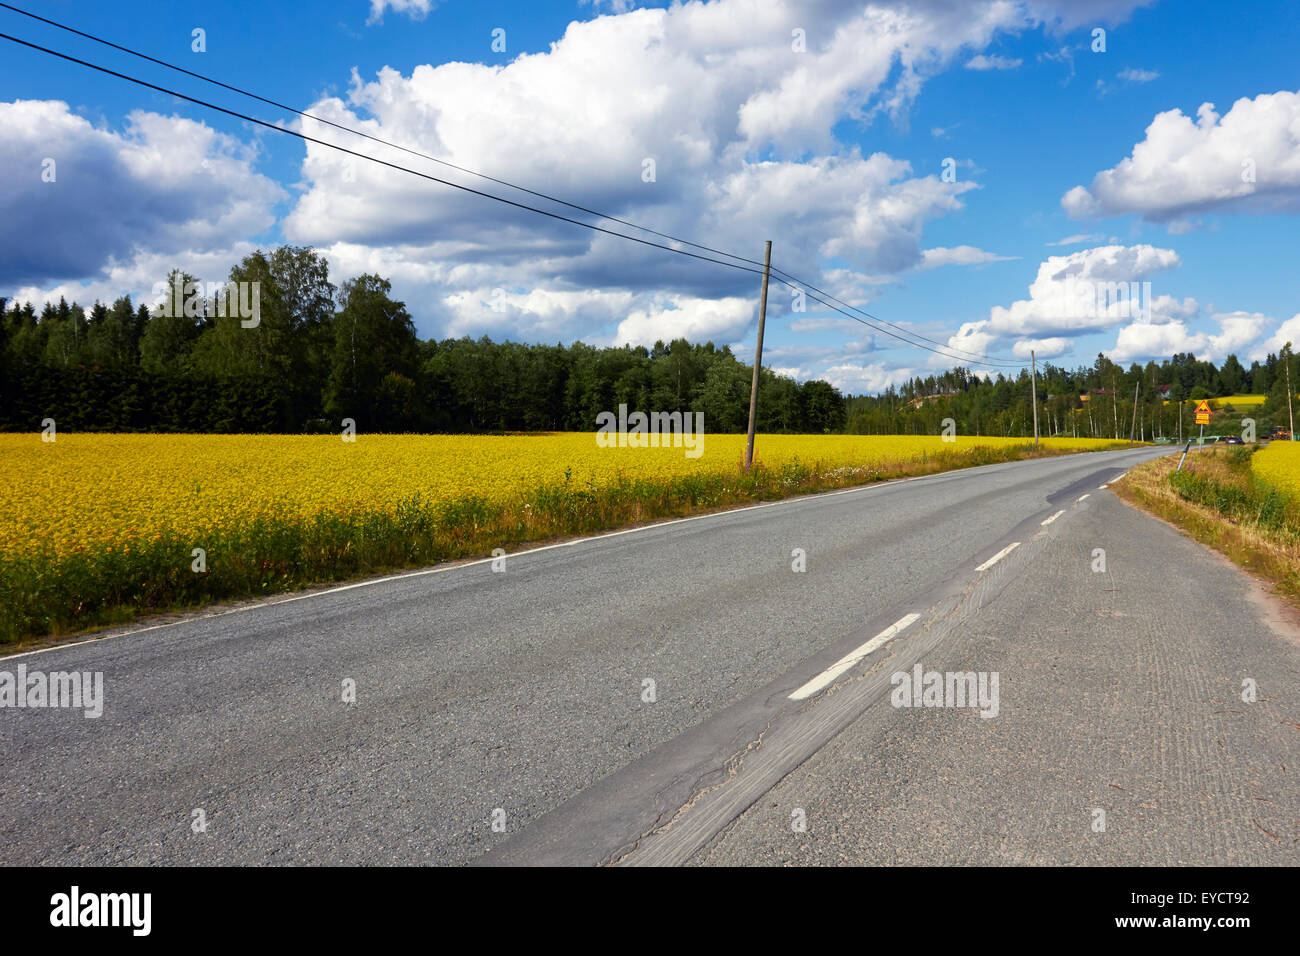 Rural road scene, Ristiina Finland Stock Photo